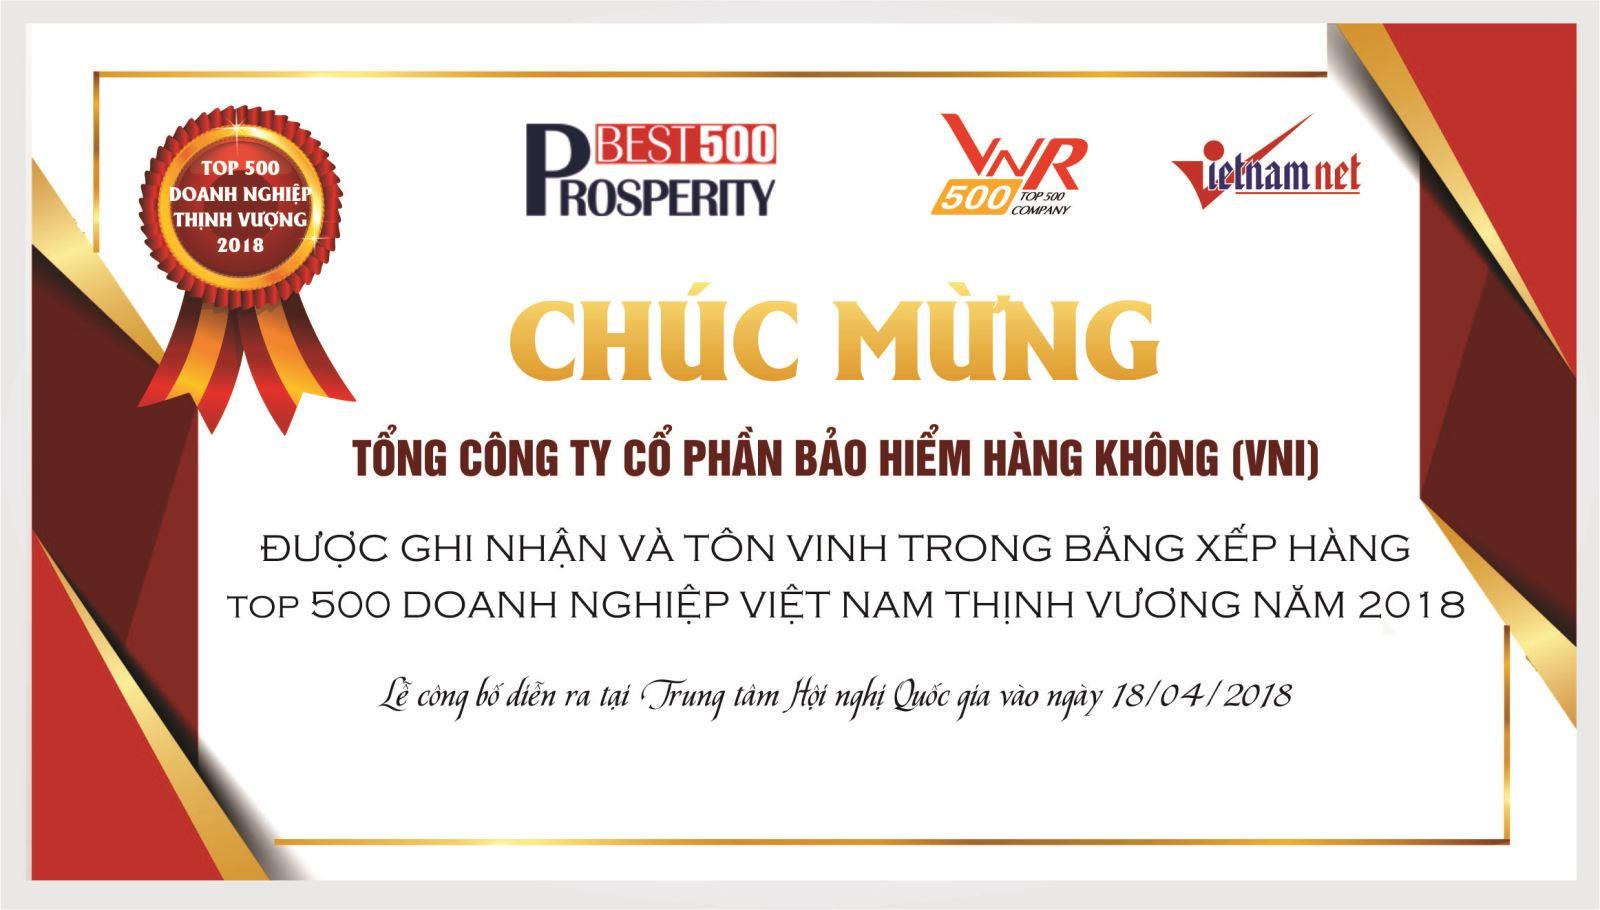 VNI được ghi nhận và tôn vinh trong Bảng xếp hạng TOP 500 doanh nghiệp Việt Nam thịnh vượng 2018 của VNR